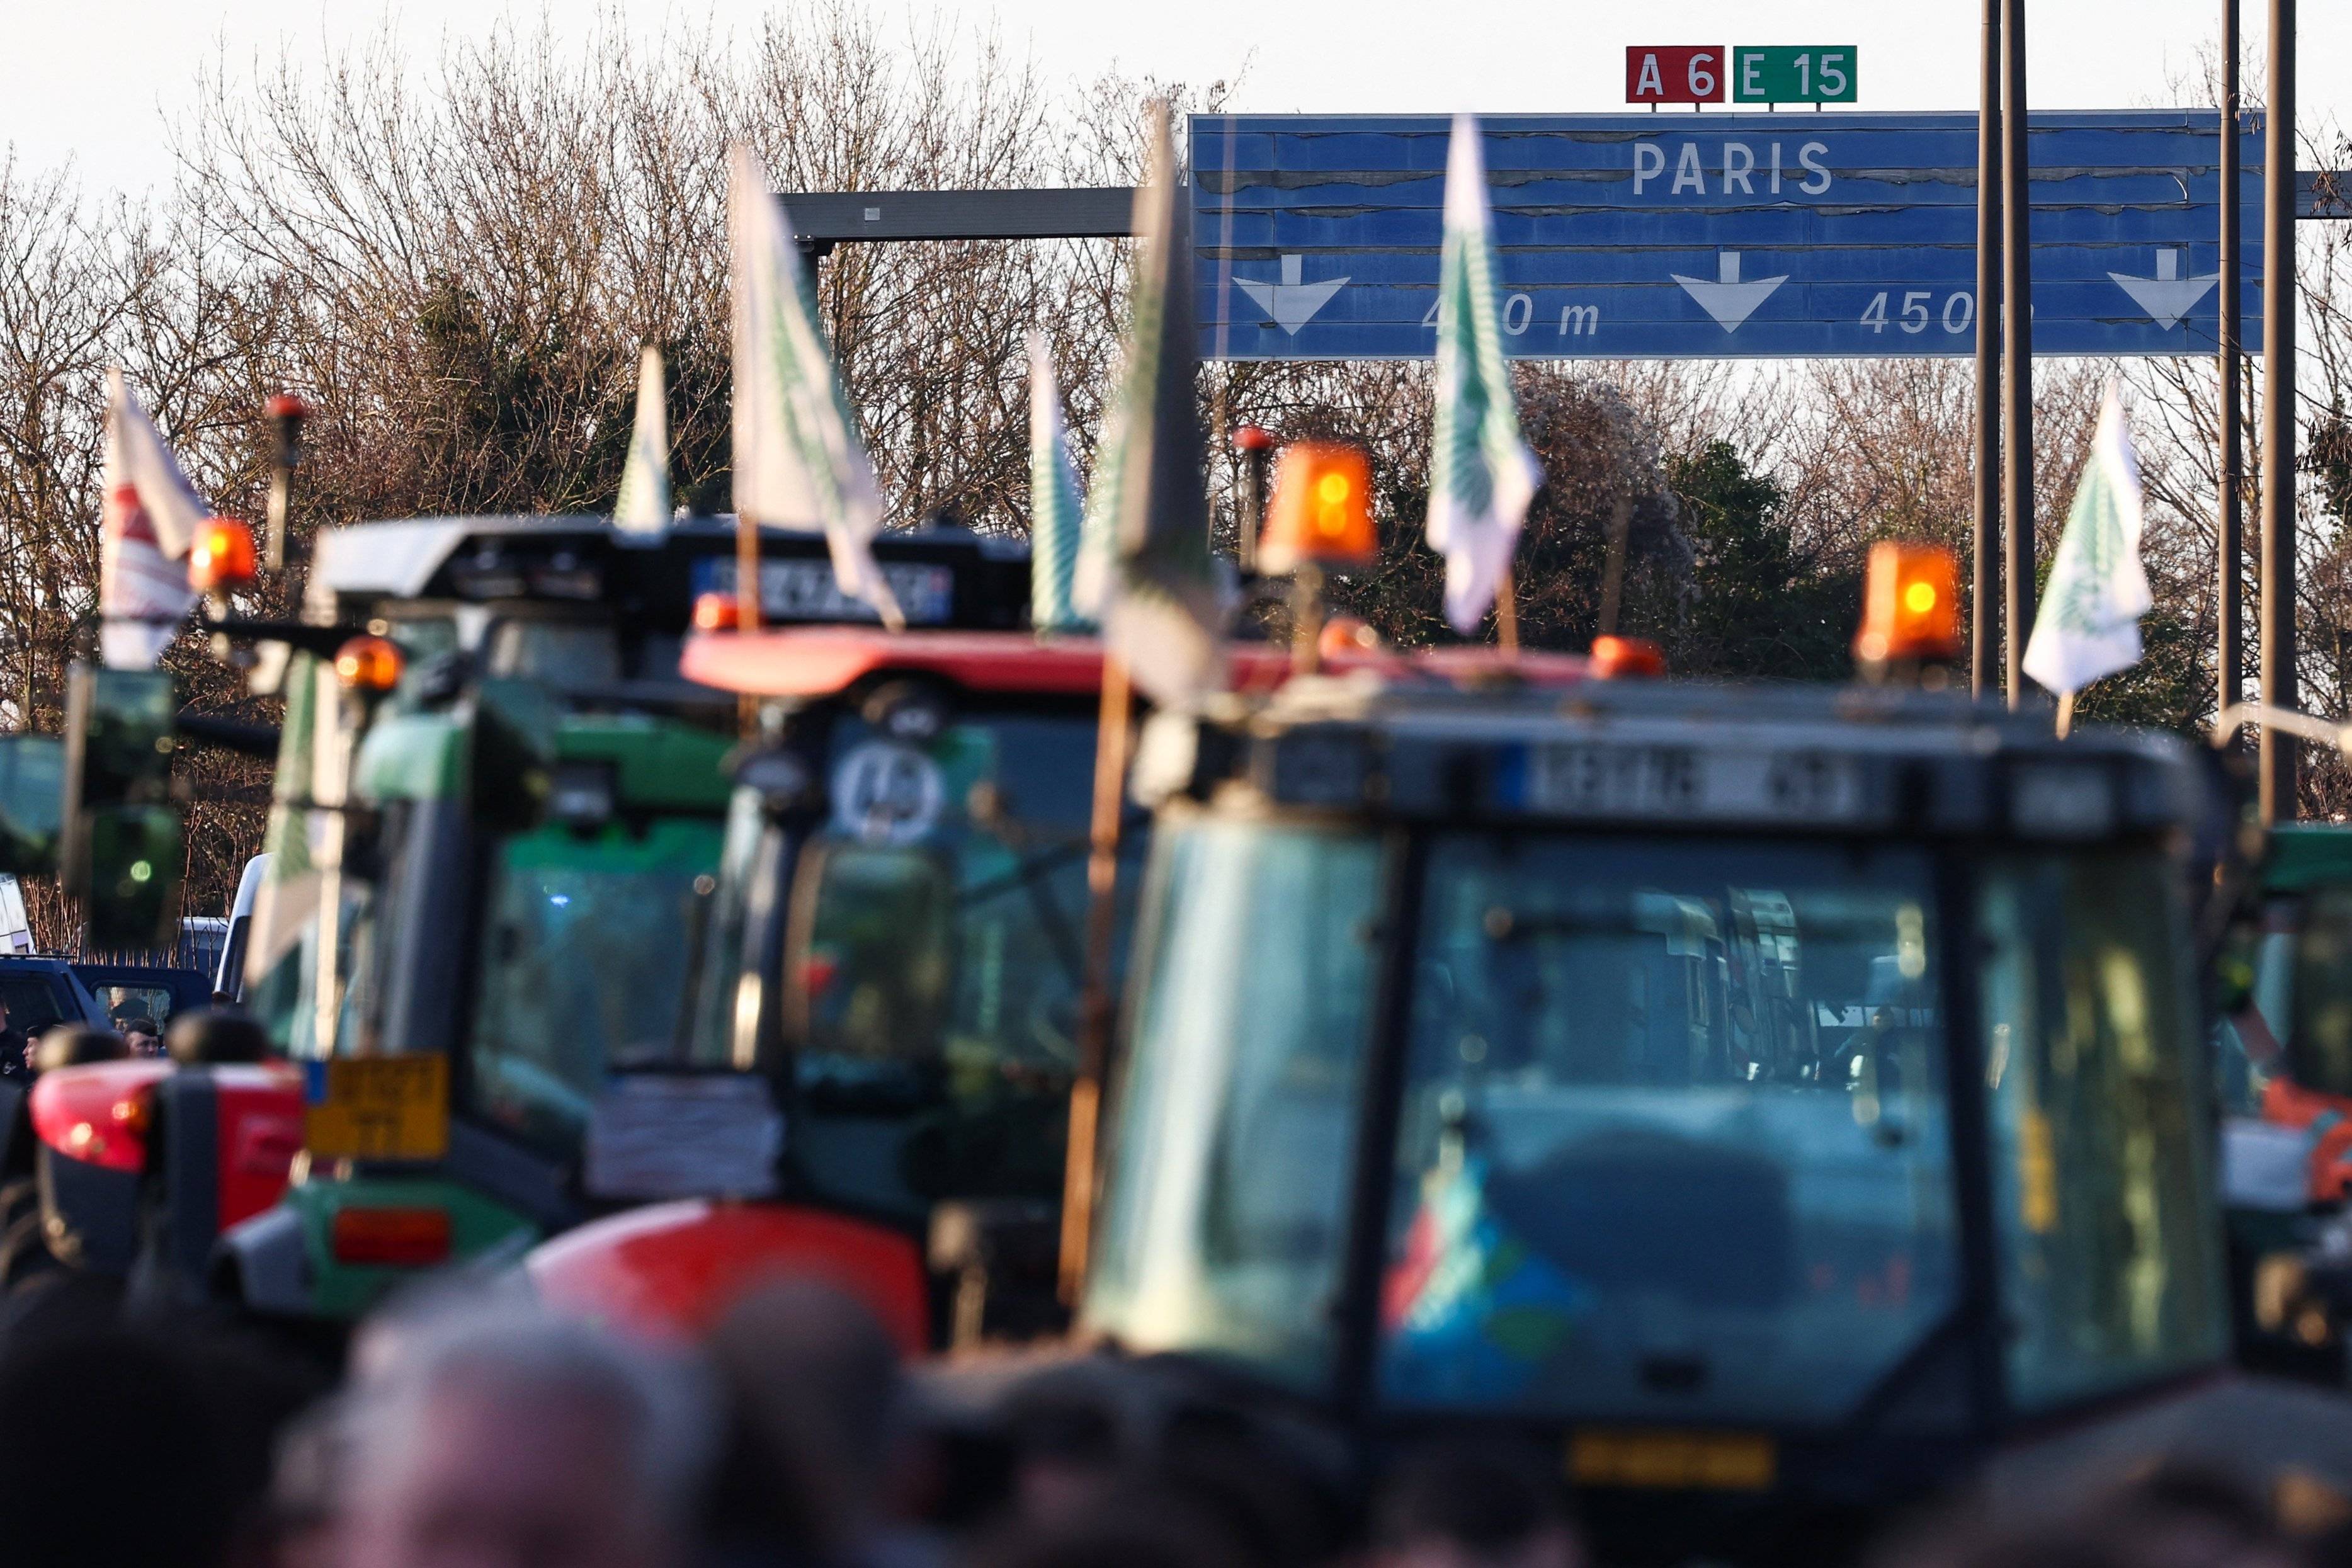 rolnicze ciągniki jadą autostradą, drogowskaz pokazuje kierunek na Paryż